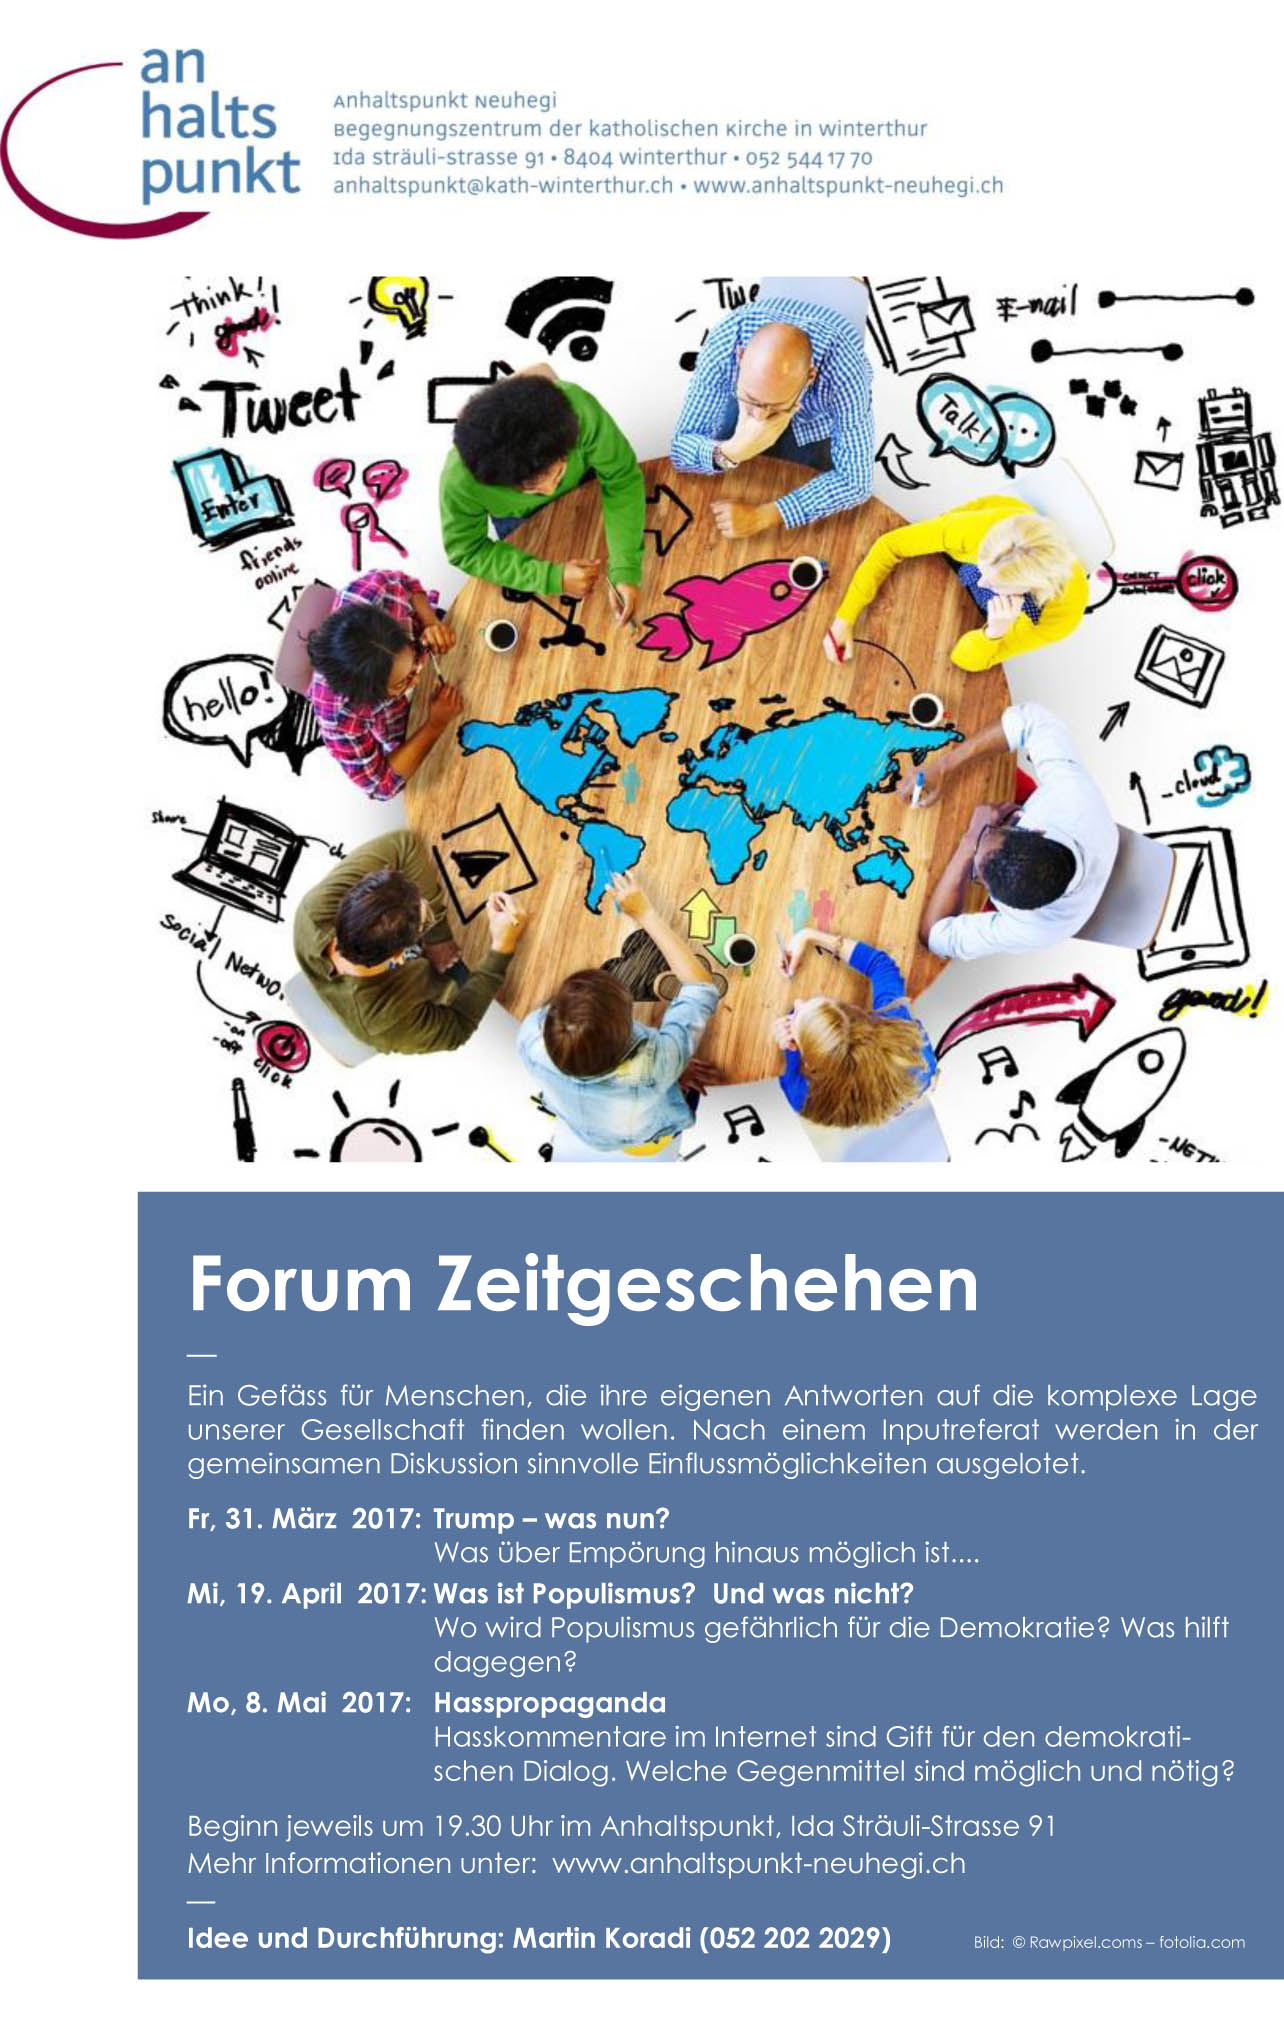 ahp_forum zeitgeschehen_17